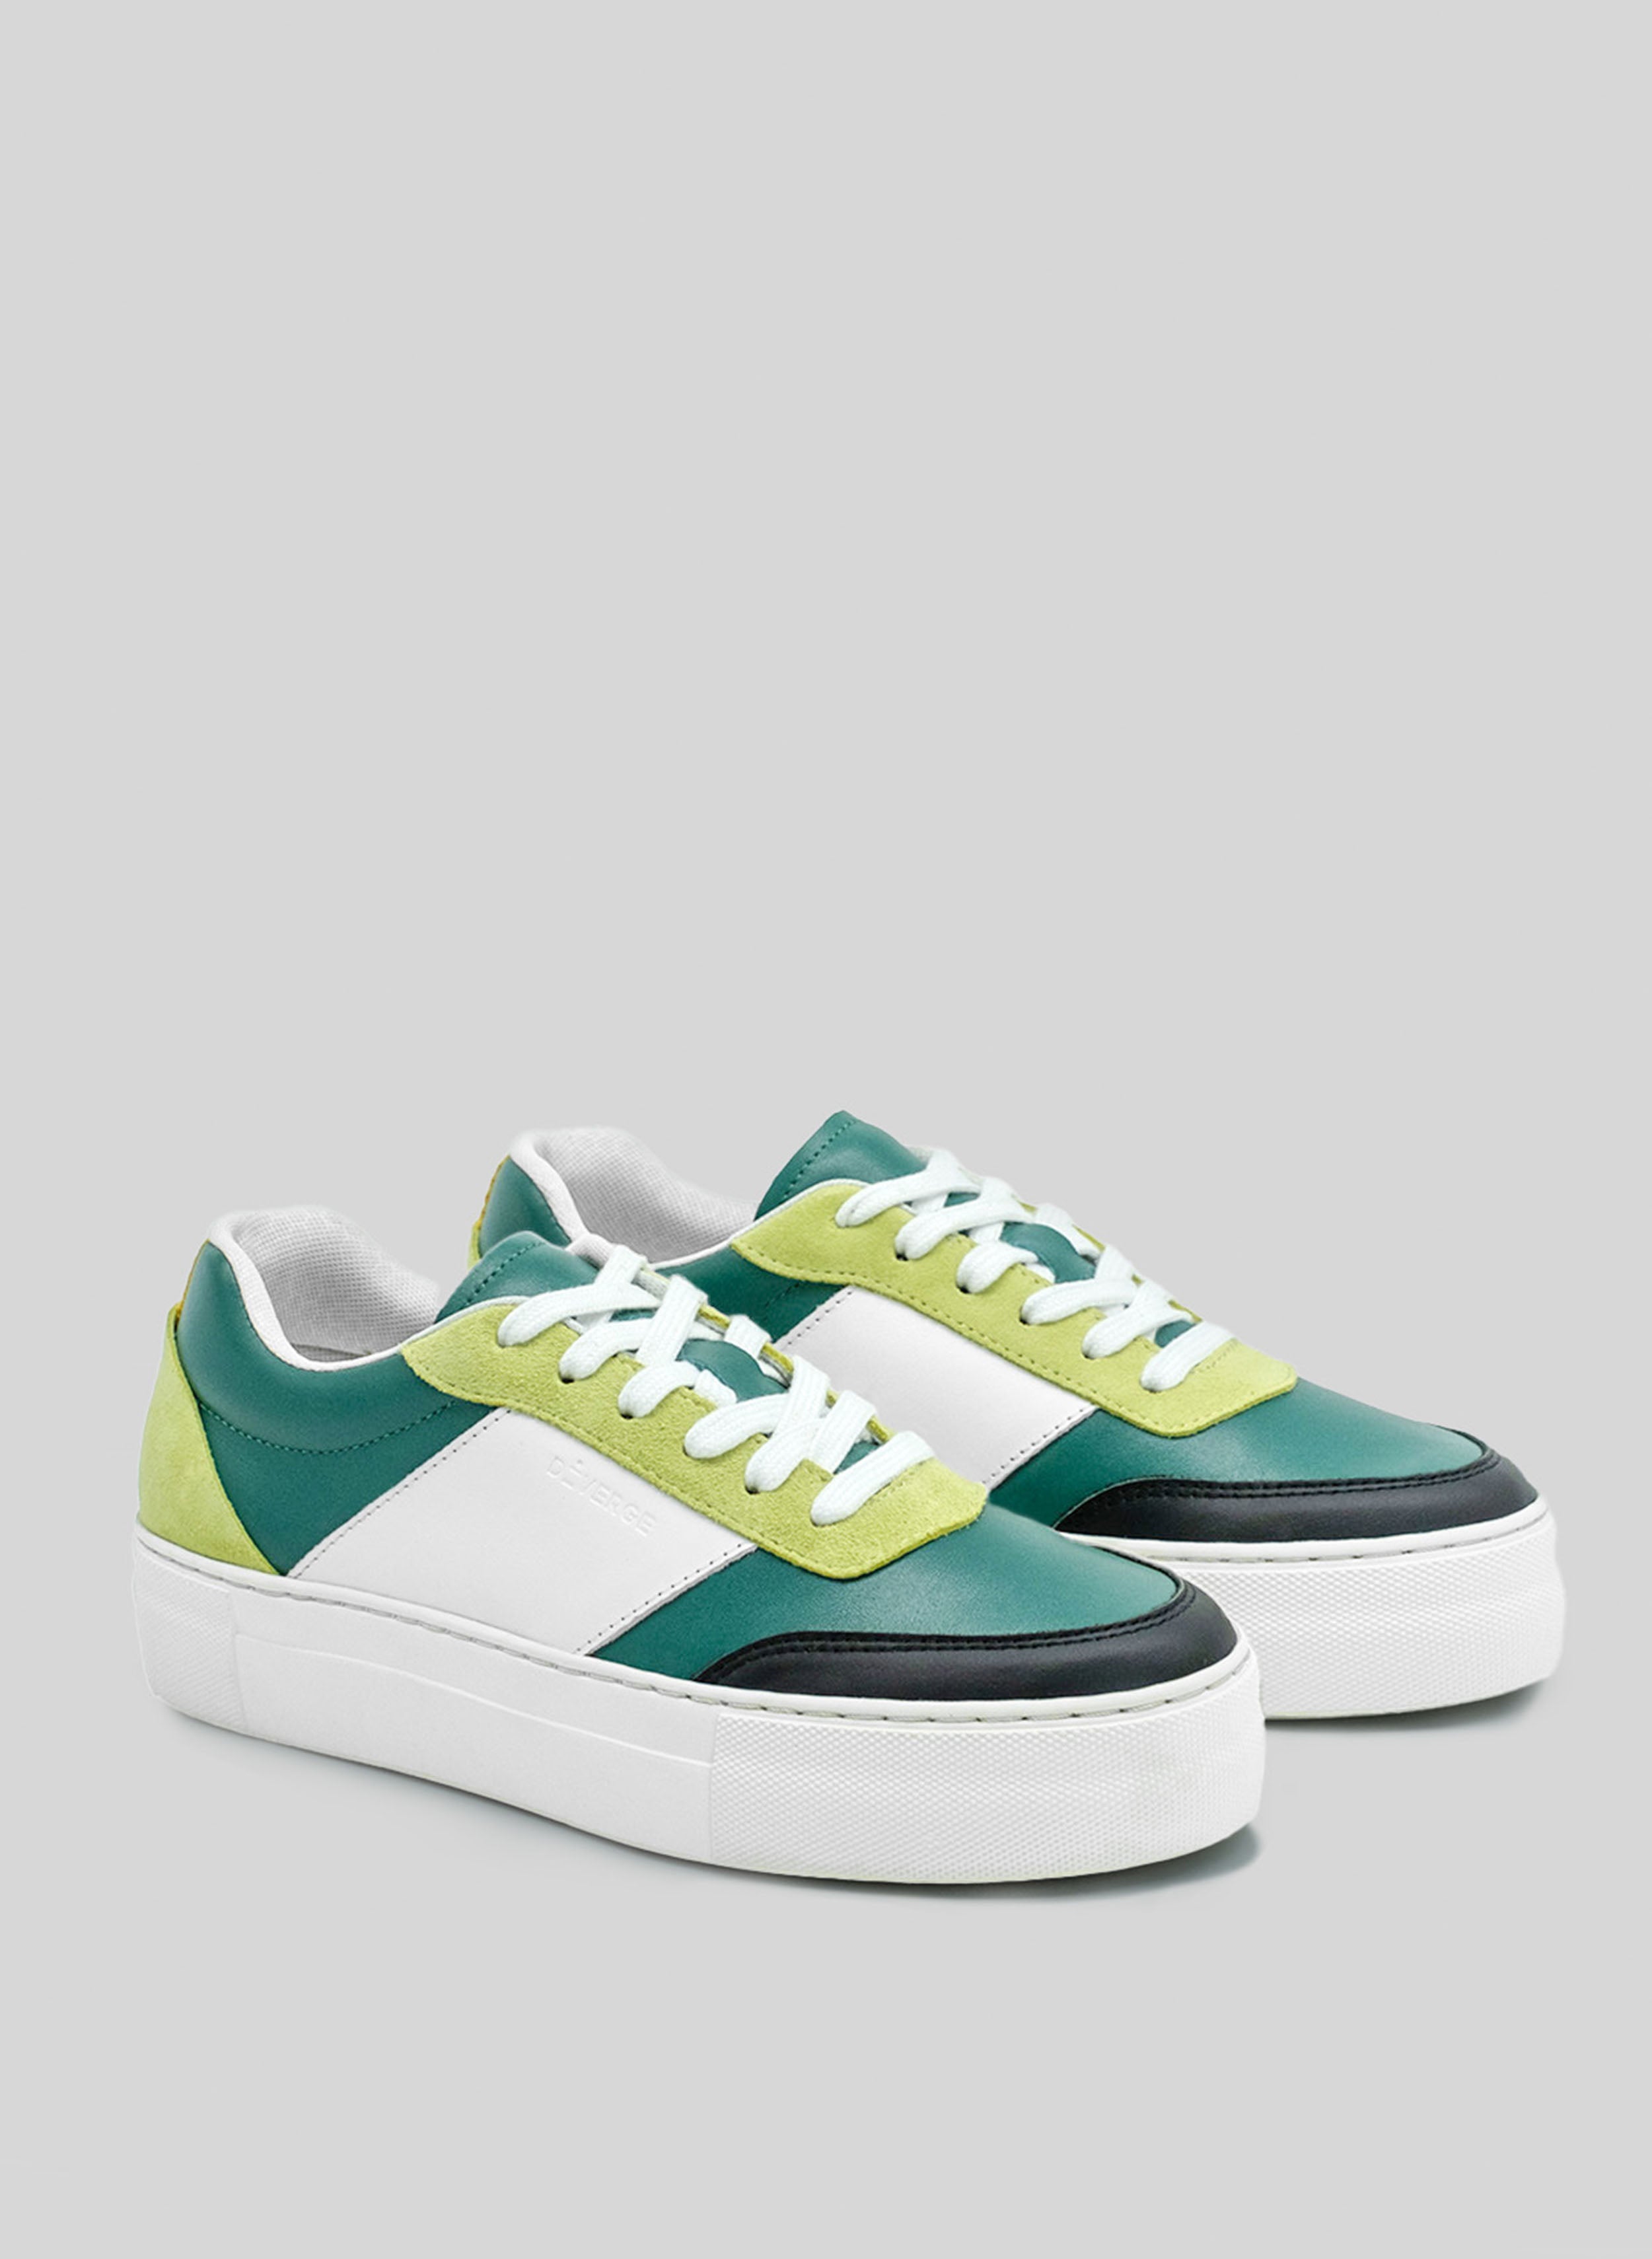 Un par de zapatillas personalizadas de color verde, blanco, negro y lima sneakers con suela blanca, fabricadas por Diverge, que promueven un impacto social.